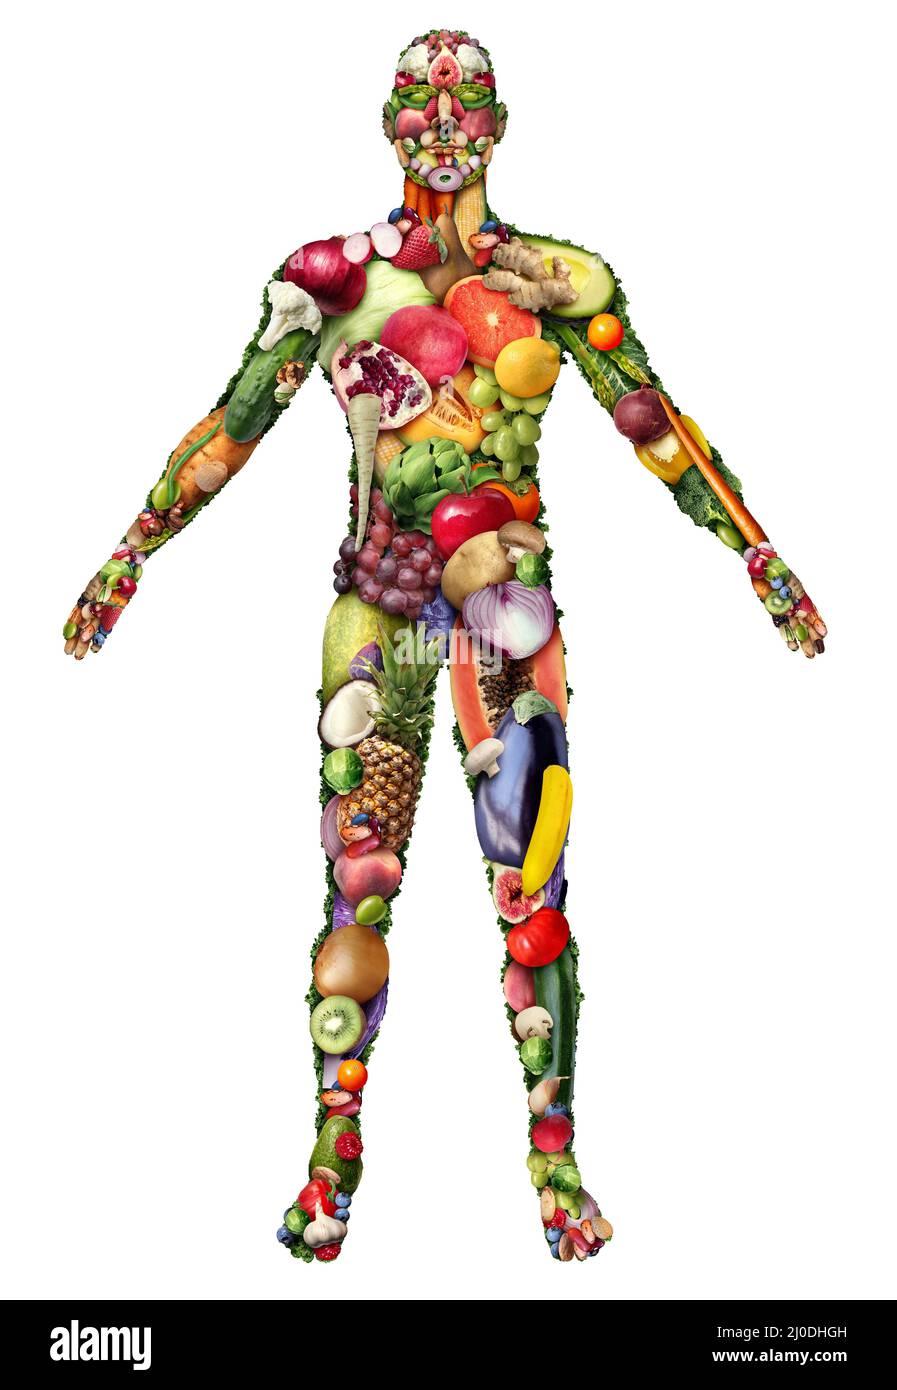 Menschlicher Körper aus Obst und Gemüse und essen gesund oder vegan und Veganismus oder natürliche Ernährung Lebensstil als eine Gruppe von frischen reifen Früchten und Nüssen. Stockfoto